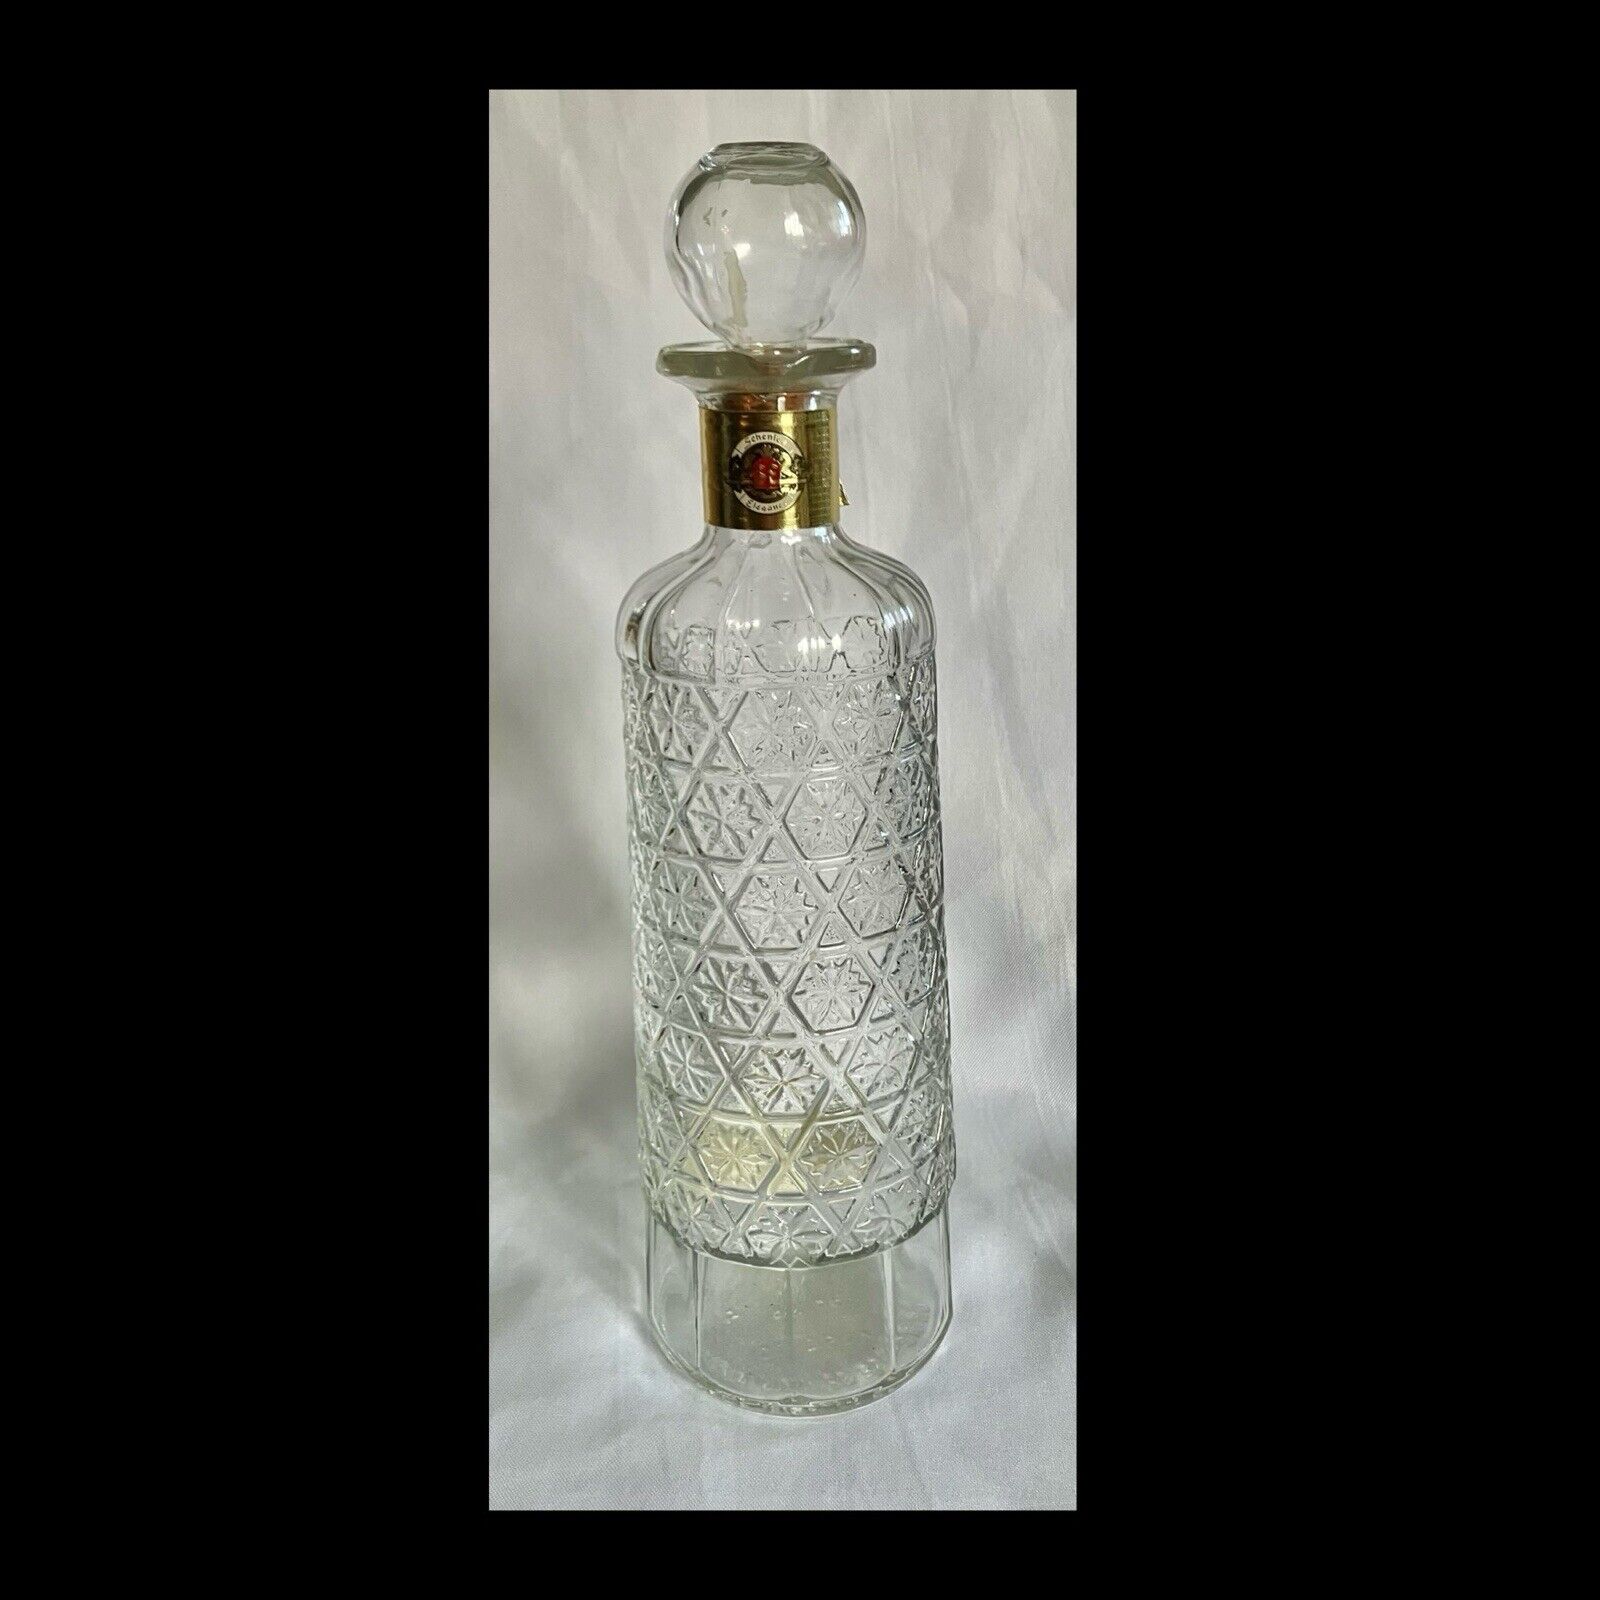 Gorgeous Schenley Elegance Vintage Whiskey Bottle 